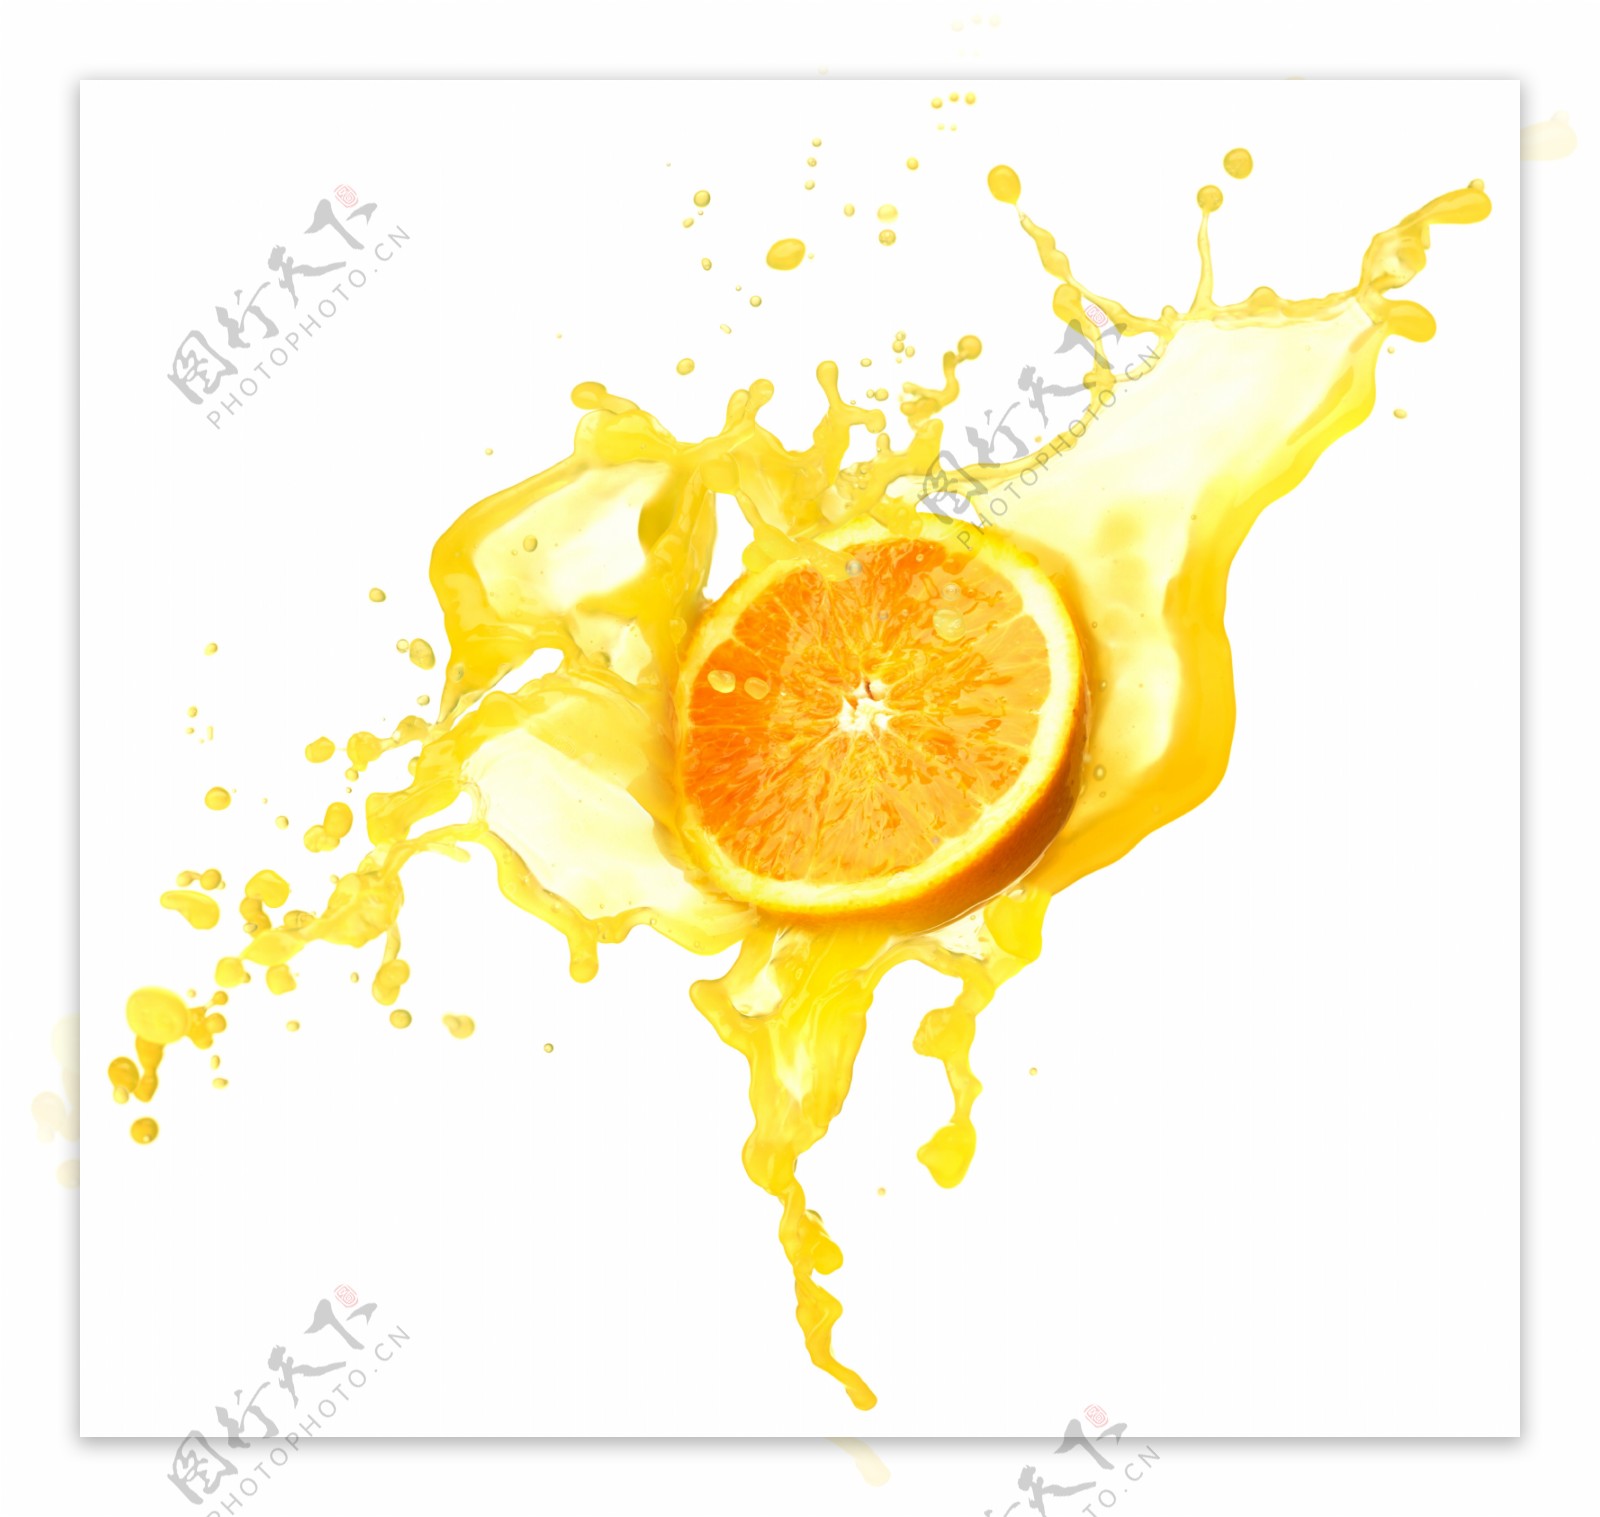 橙汁和橙子